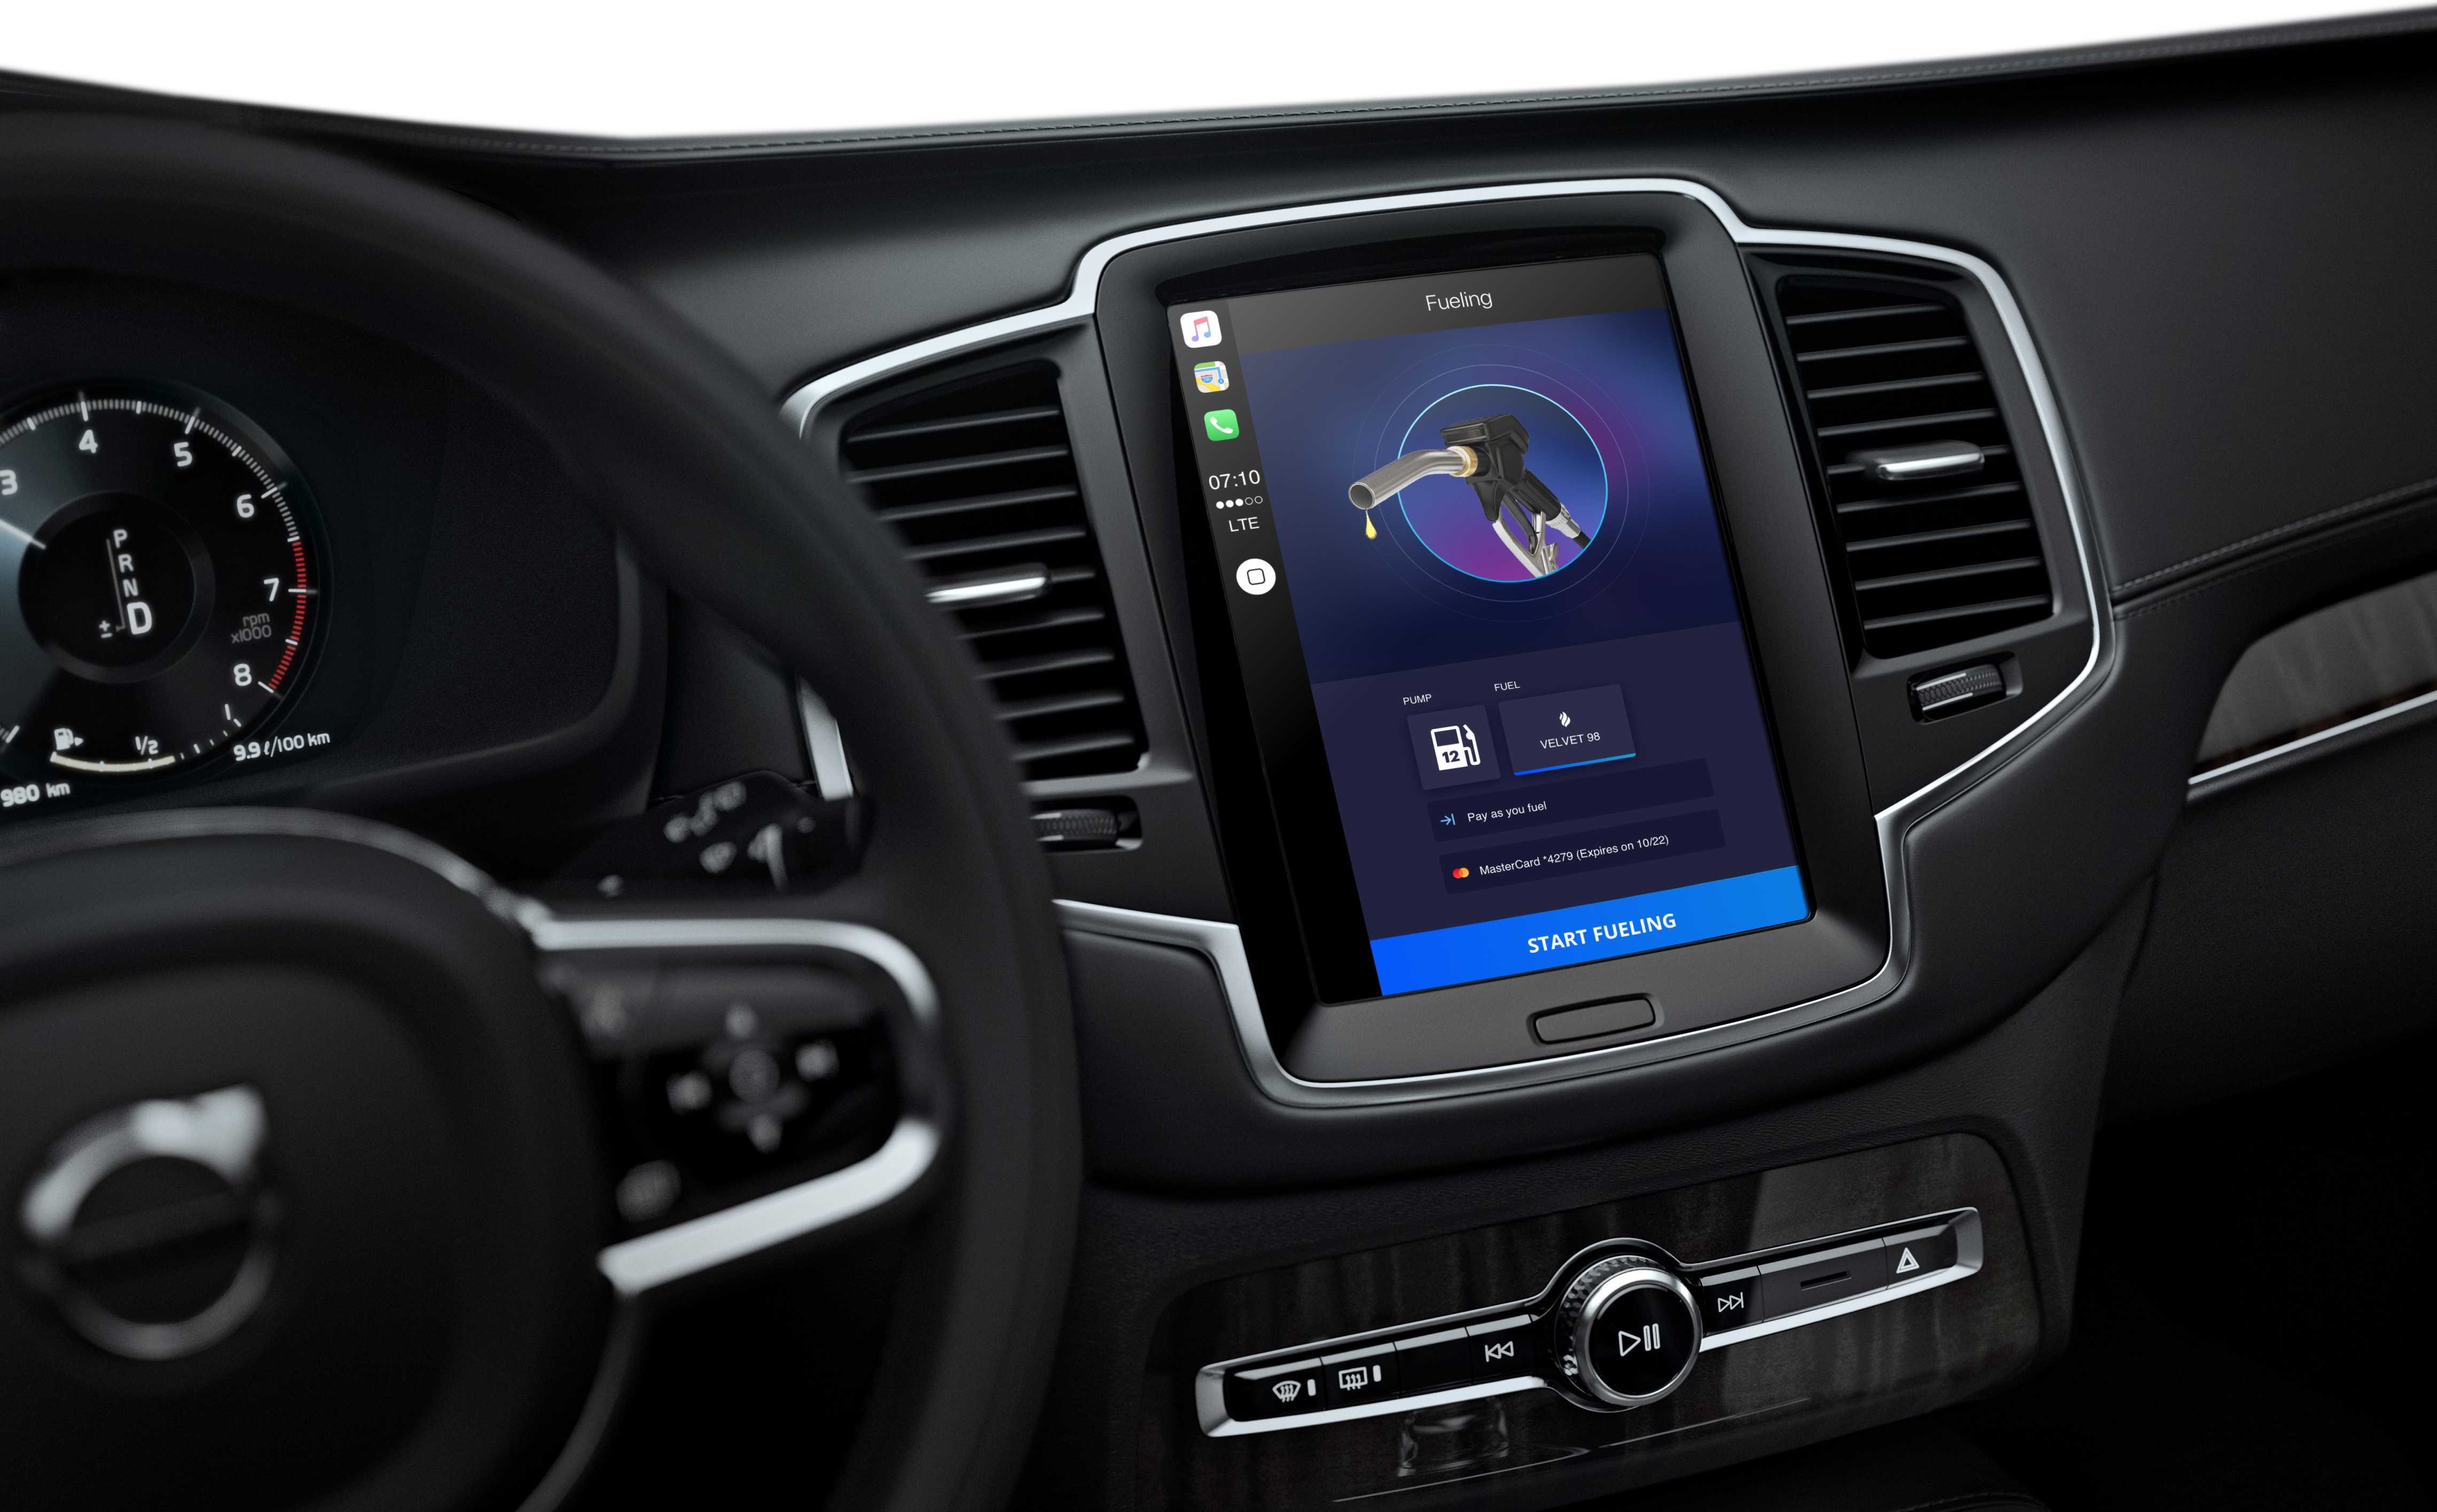 Tableau de bord d'une voiture avec interface utilisateur de l'application Car Play pour une chaîne de stations-service